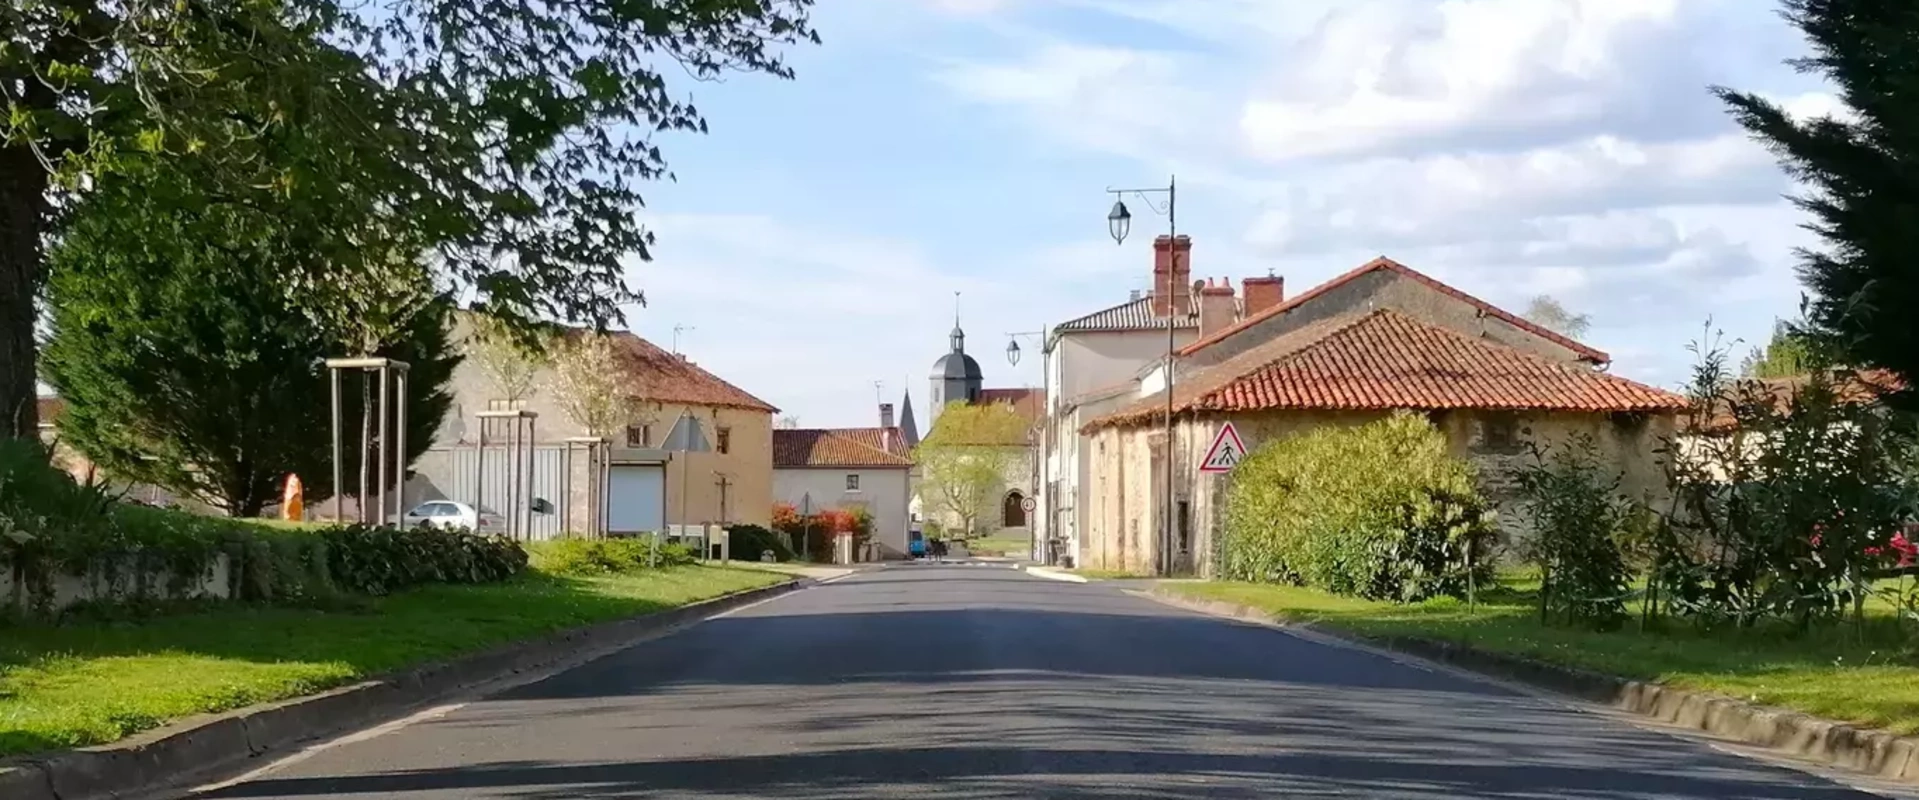 Bienvenue sur le site officiel de la commune de Saint-Martial-sur-Isop (87) Haute-Vienne